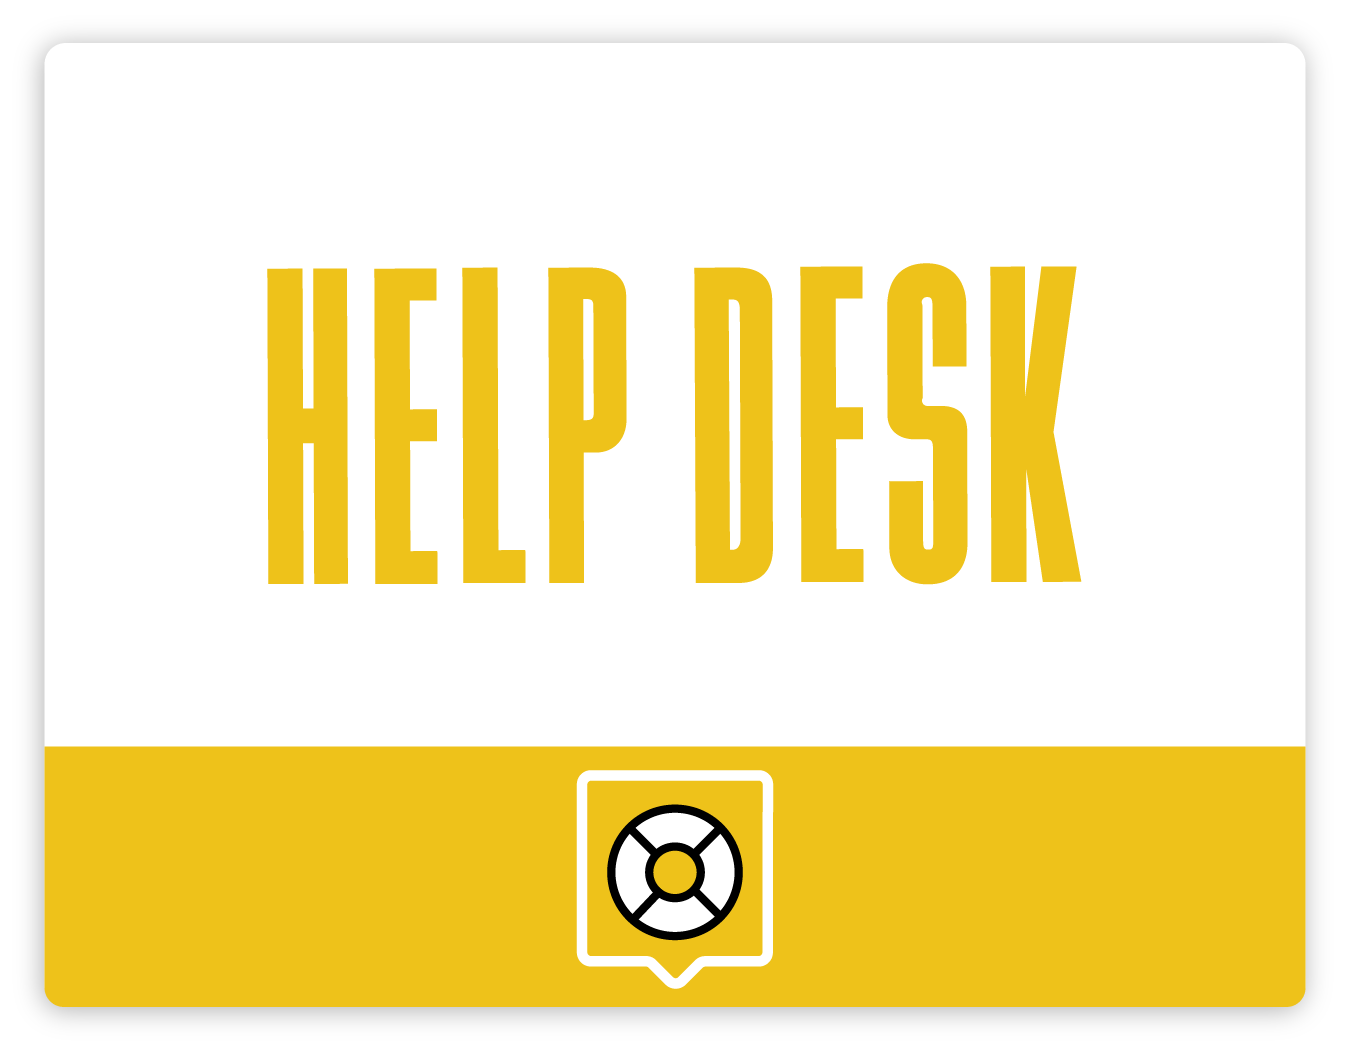 /images/Uptime.com_Support_Help_Desk_Website_Uptime_Monitoring_Software.png